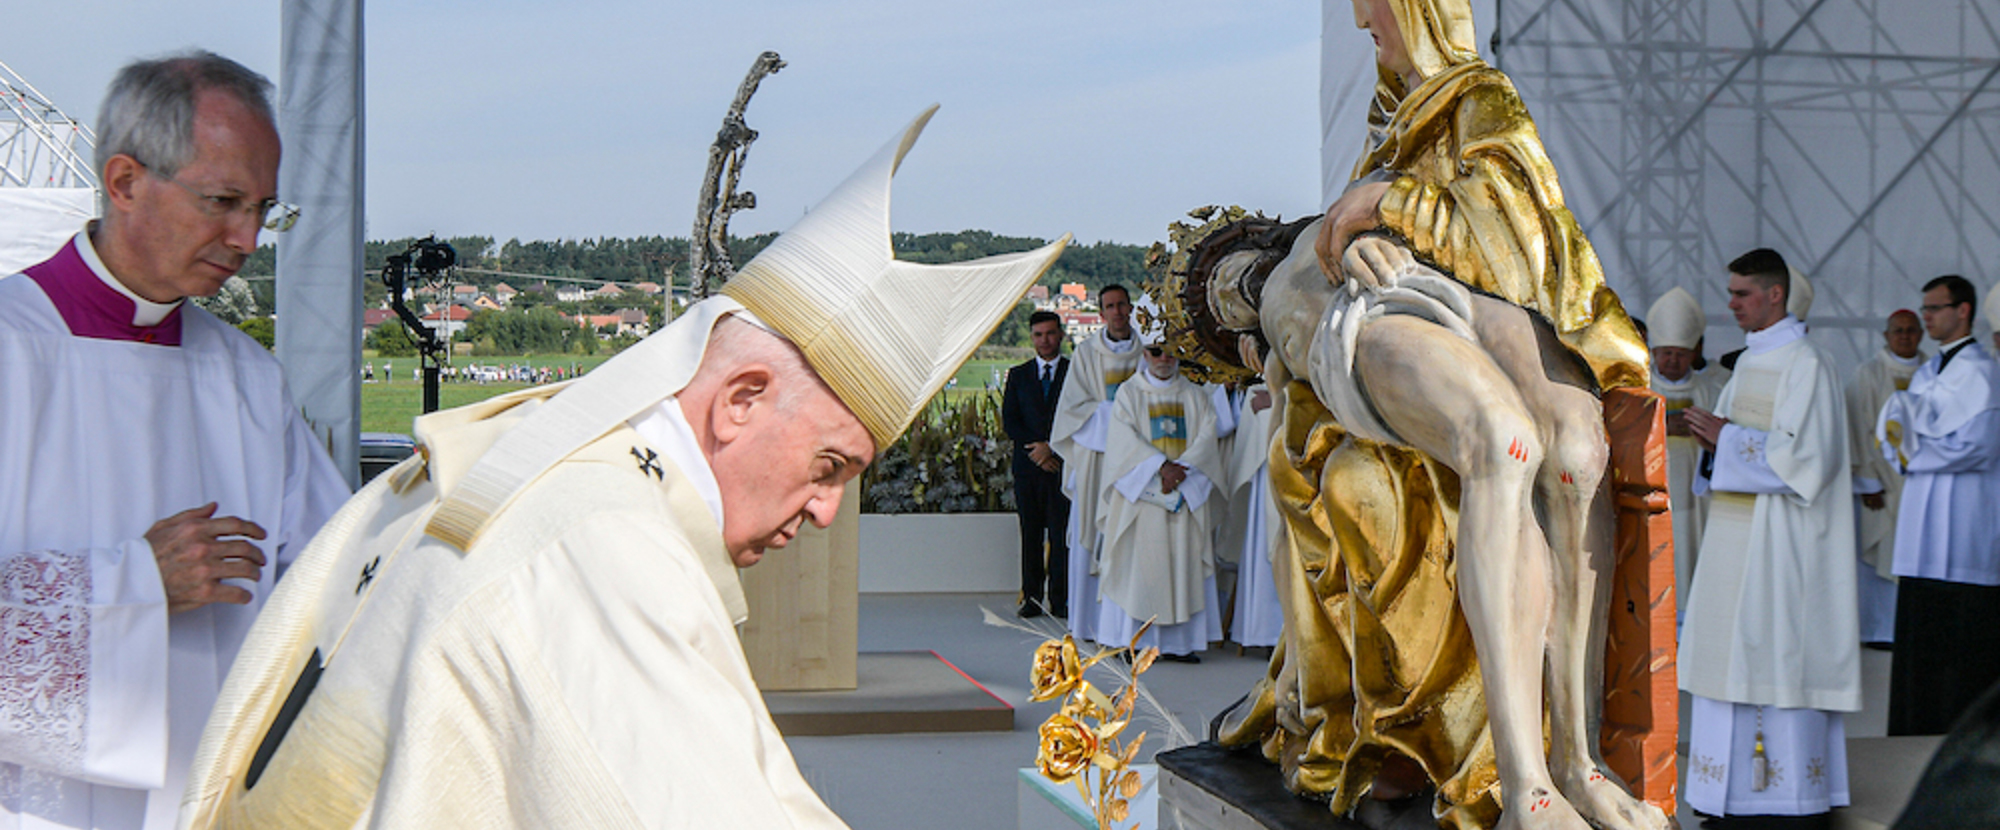 Papst Franziskus legt eine goldfarbene Rose vor eine Figur der Maria von den Sieben Schmerzen, vor der Basilika von den Sieben Schmerzen Mariens am 15. September 2021 in Sastin-Straze (Slowakei).